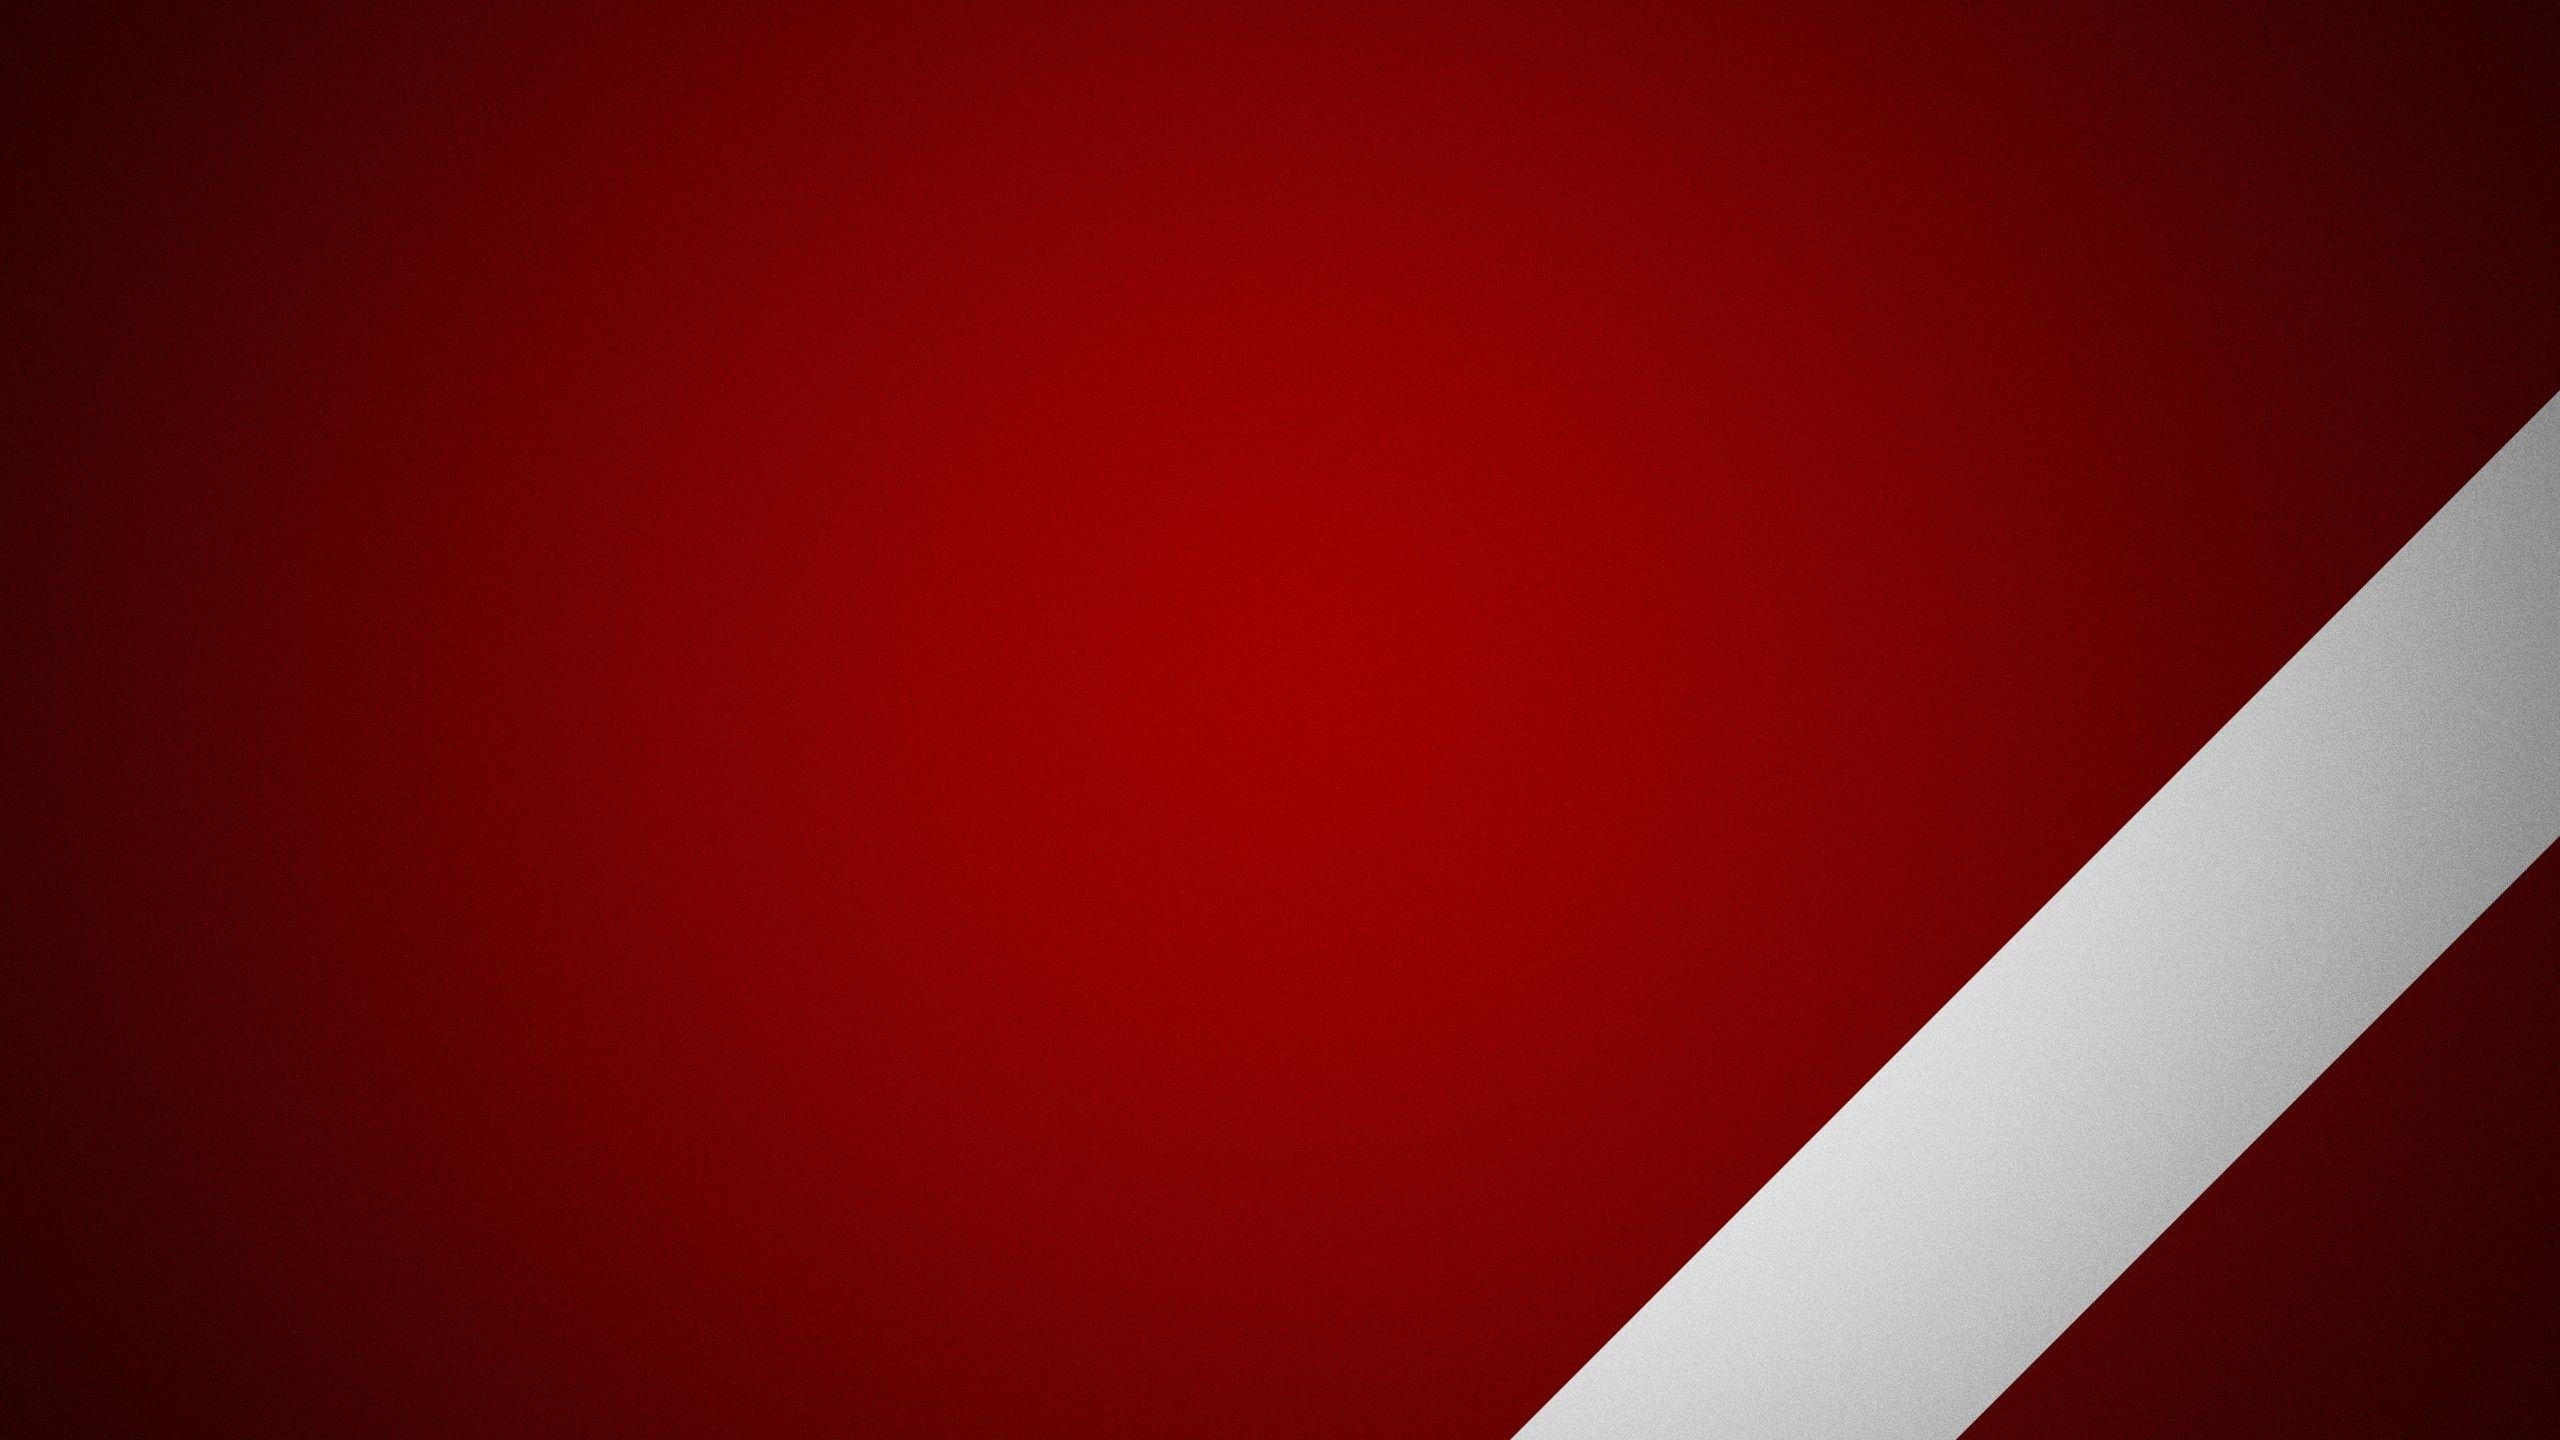 2560x1440 đỏ, Hình nền trắng có độ phân giải cao / Nền máy tính để bàn và điện thoại di động